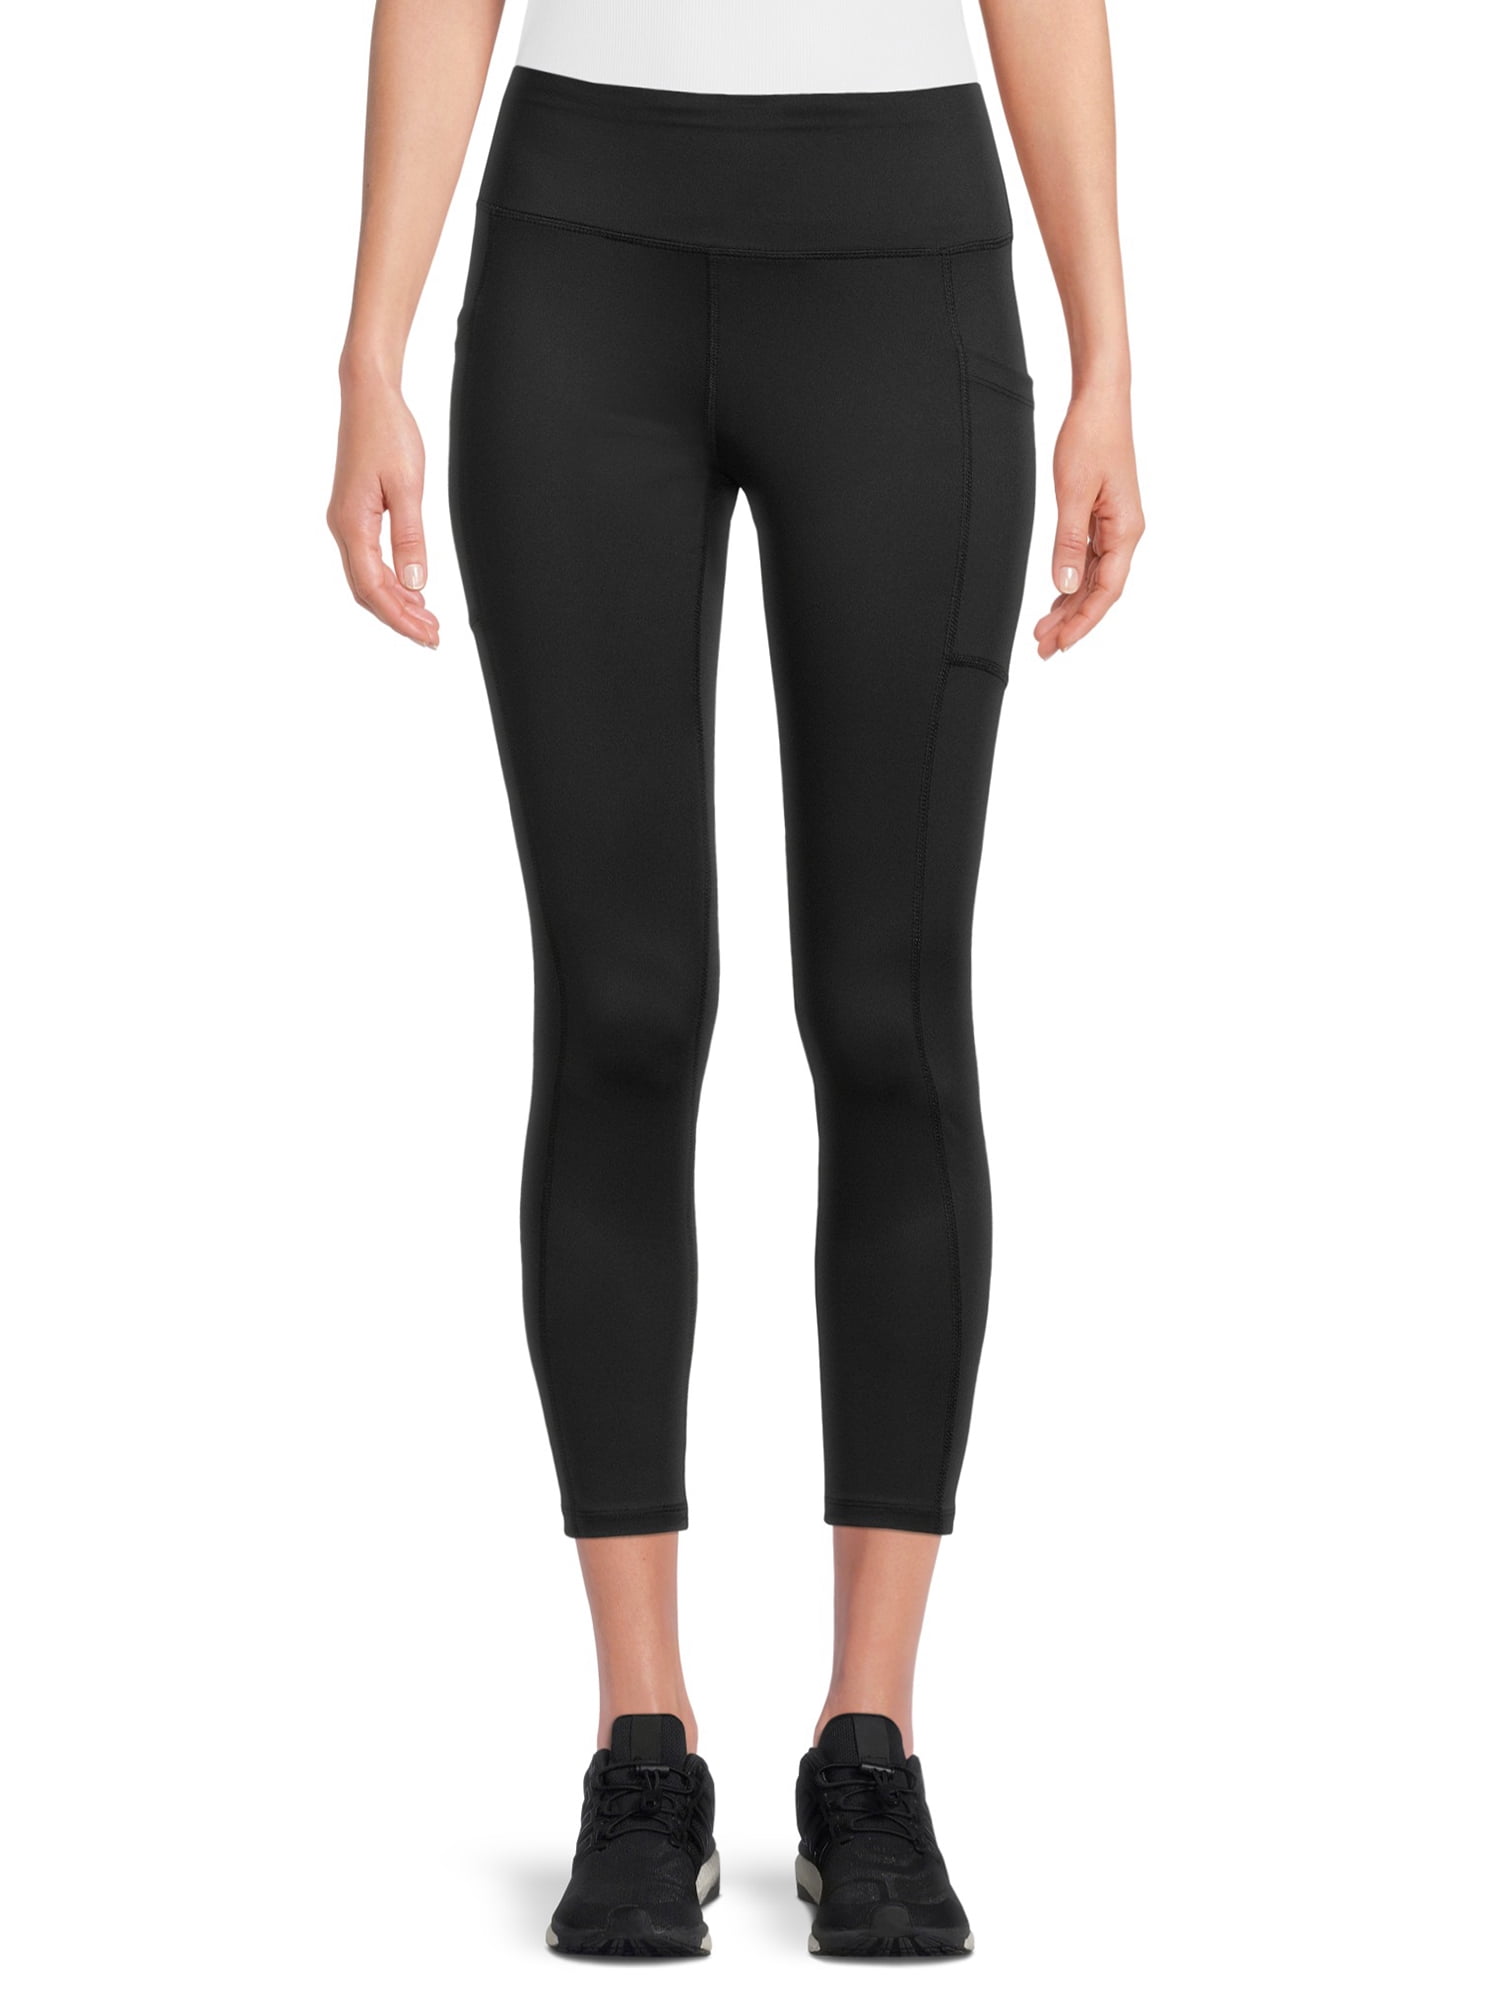 Avia Women's Activewear Mesh Leopard Print Side Stripe Legging Size XS-L 1B  